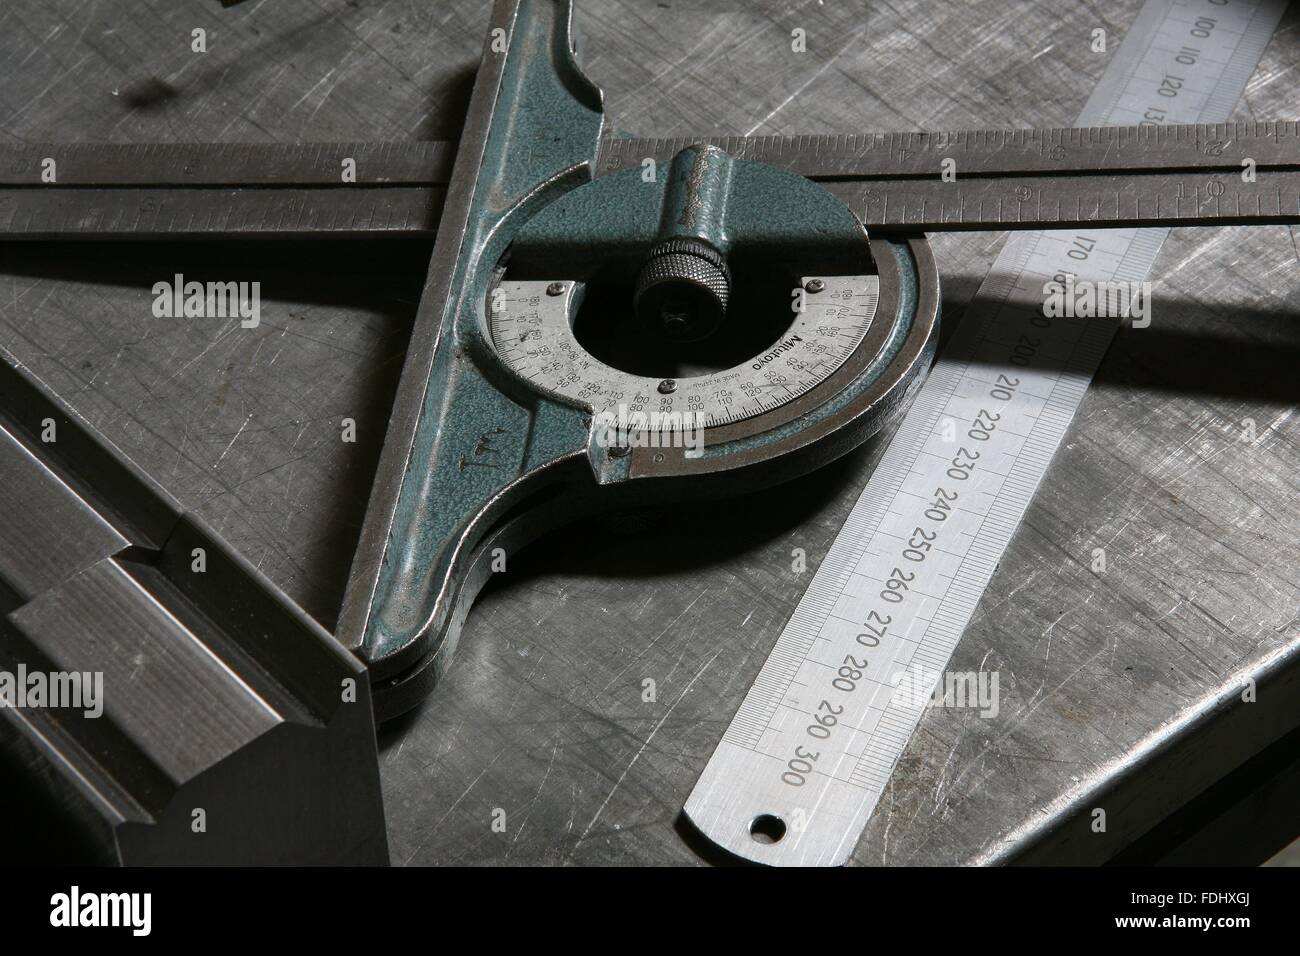 Herramientas de carpintería metálica Fotografía de stock - Alamy